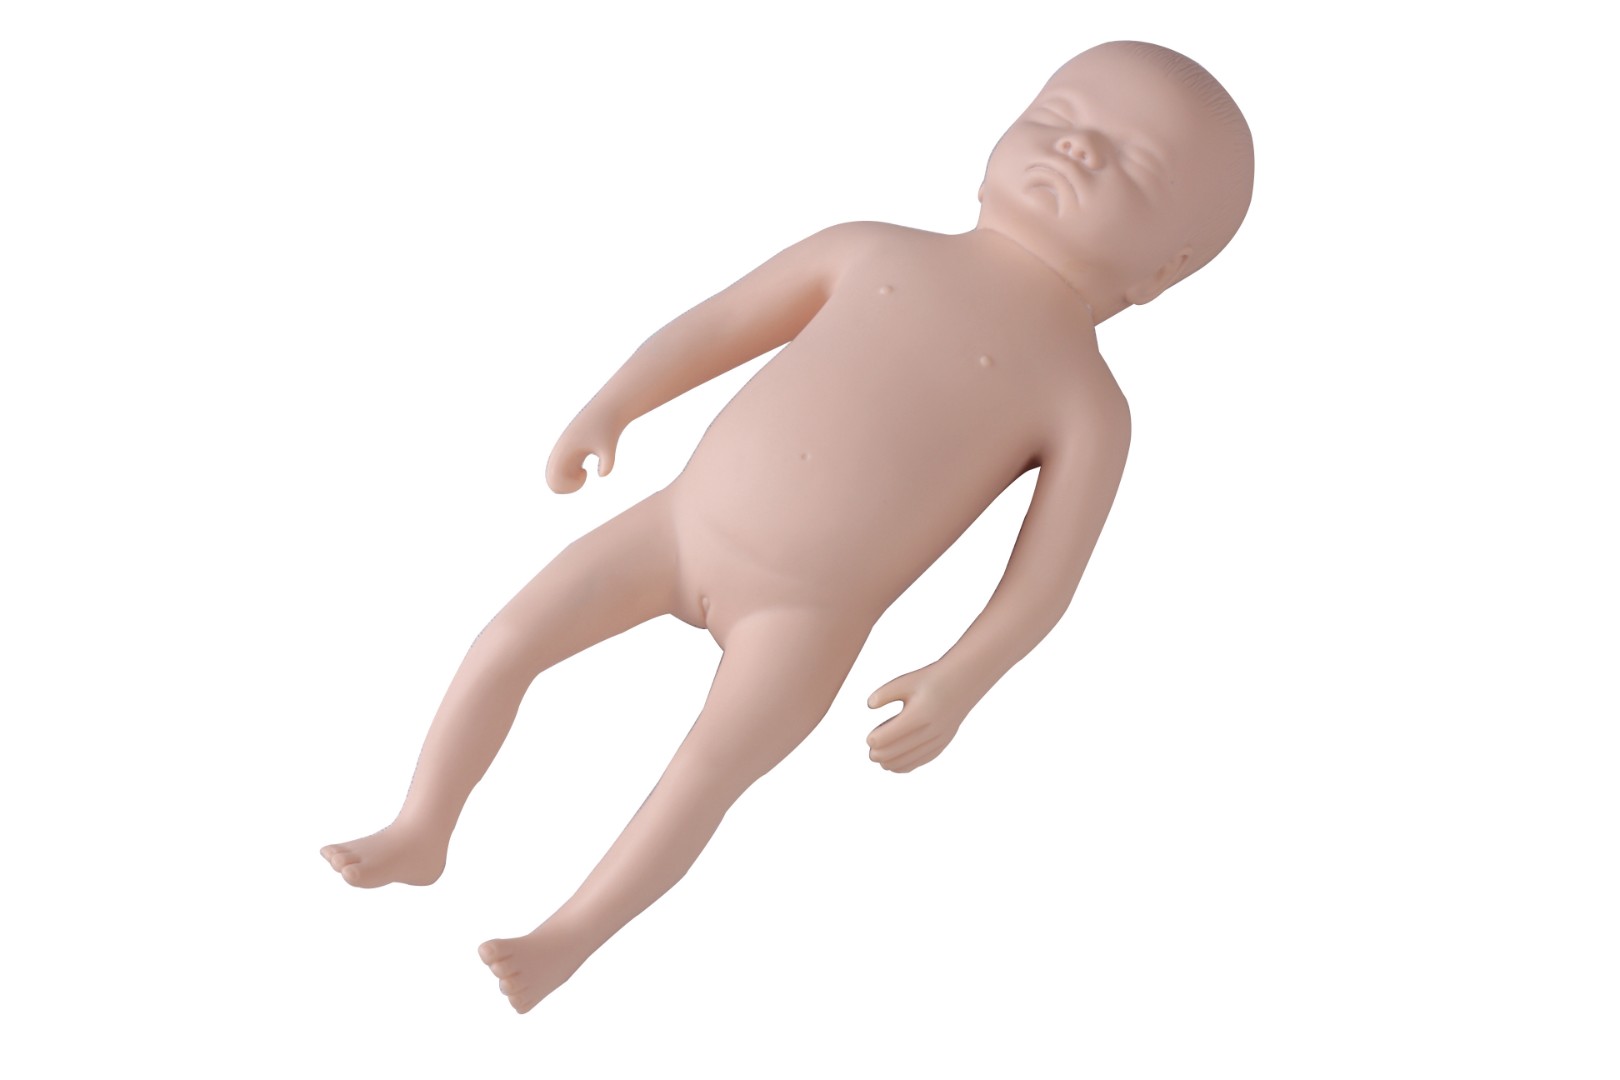 DM-PS6605 Фантом недоношенного ребенка - 30 недель